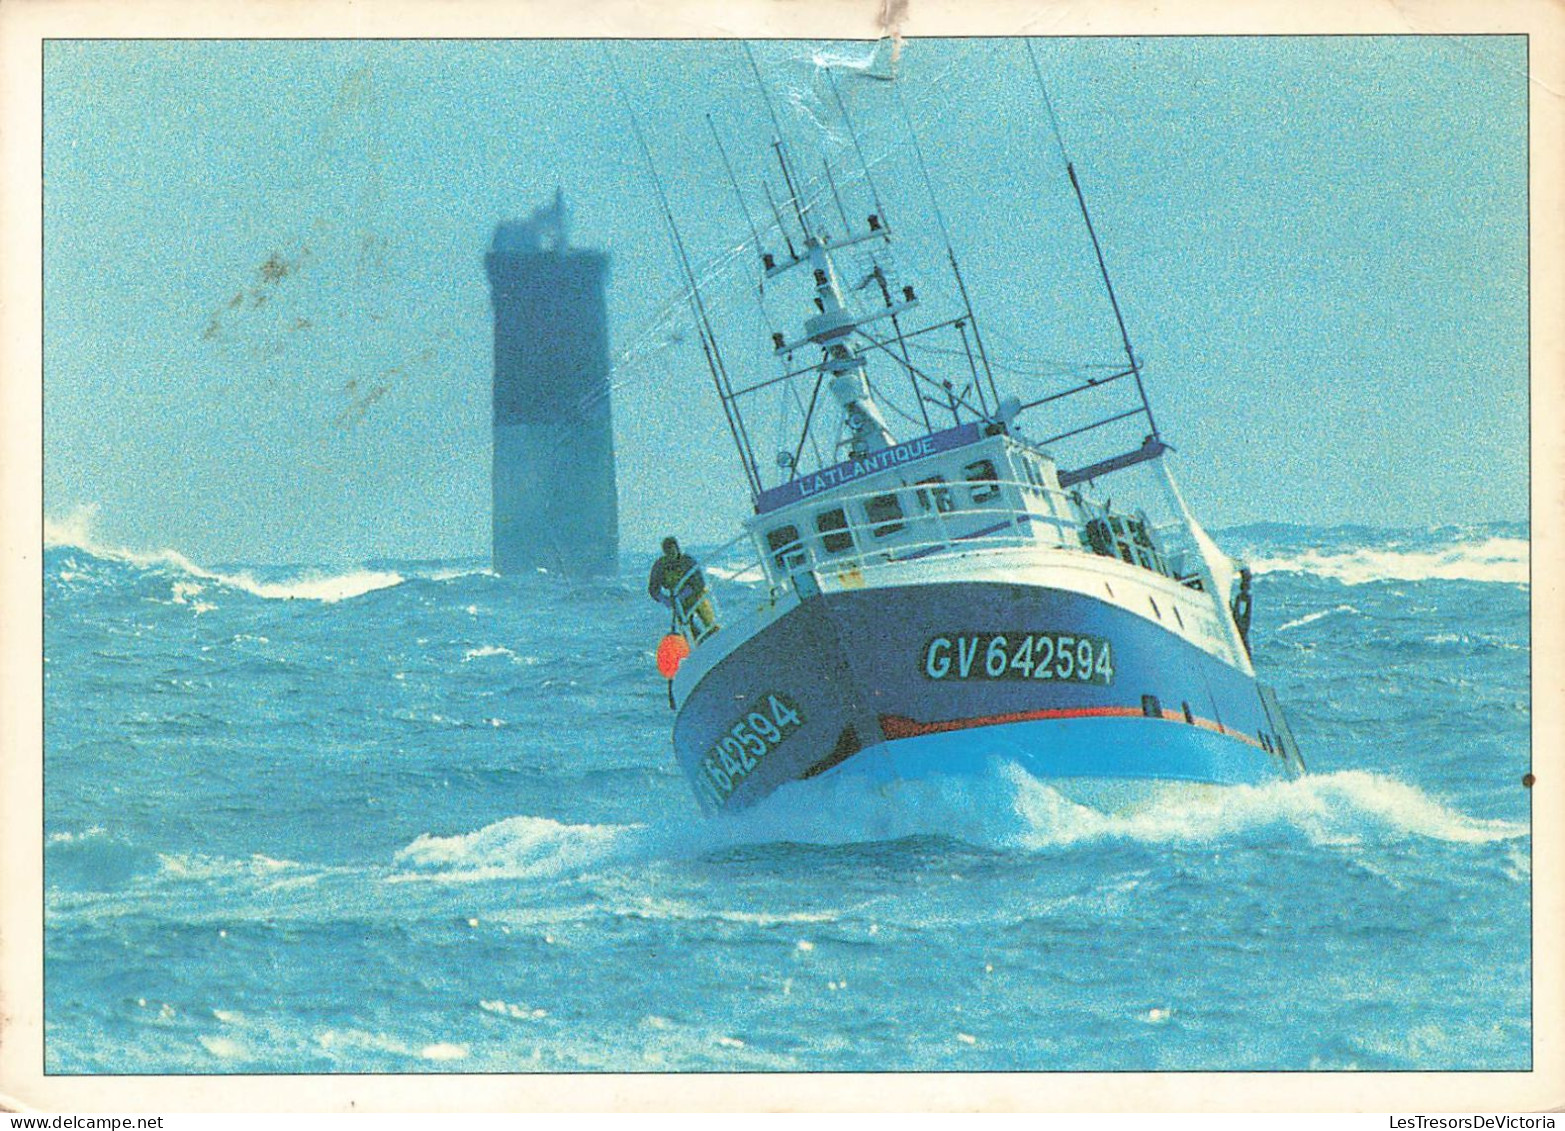 TRANSPORTS - Retour De Pêche Par Mer Grosse - Colorisé - Carte Postale - Fishing Boats